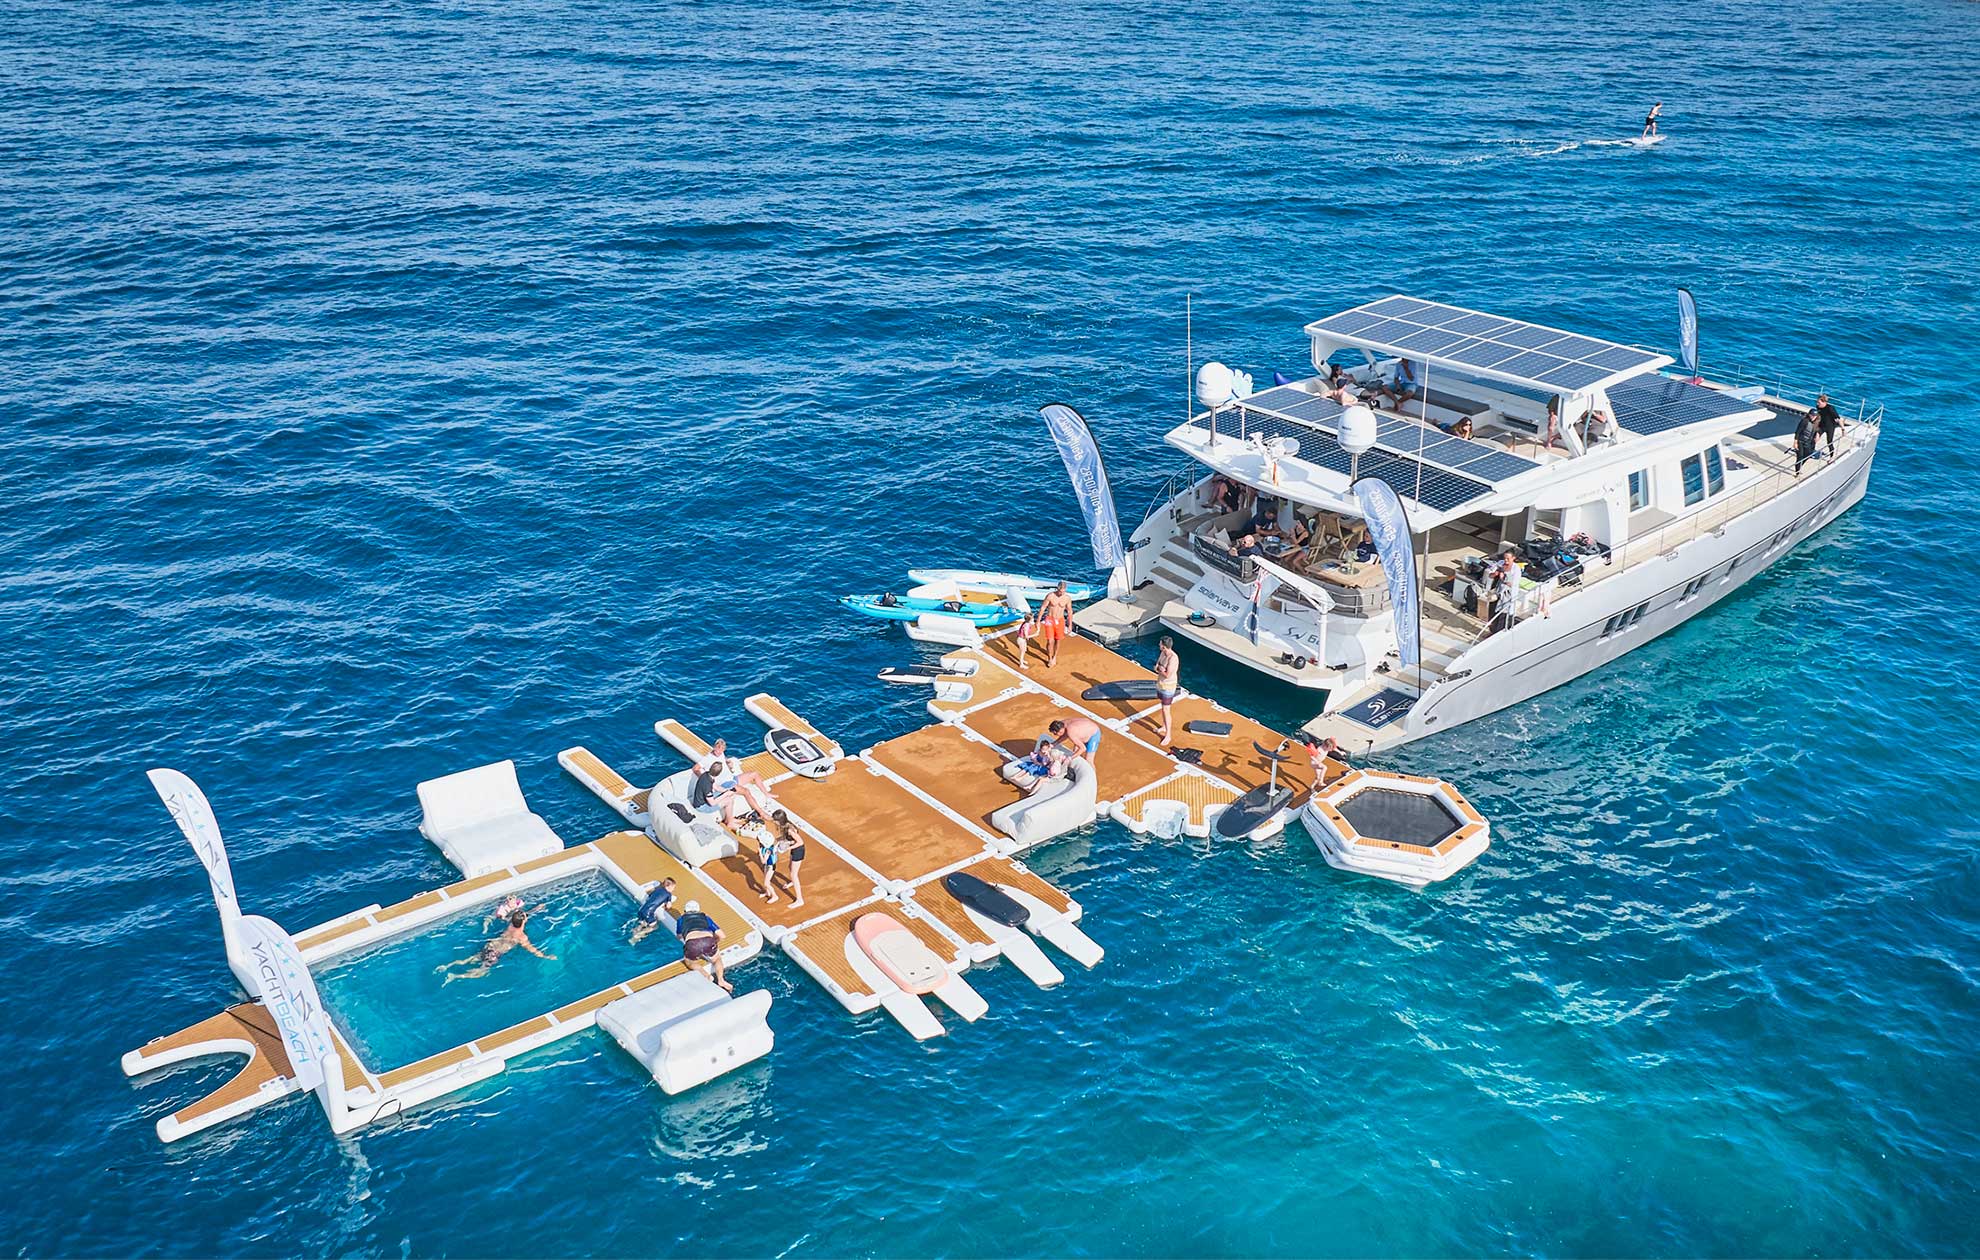 80 foot solar catamaran